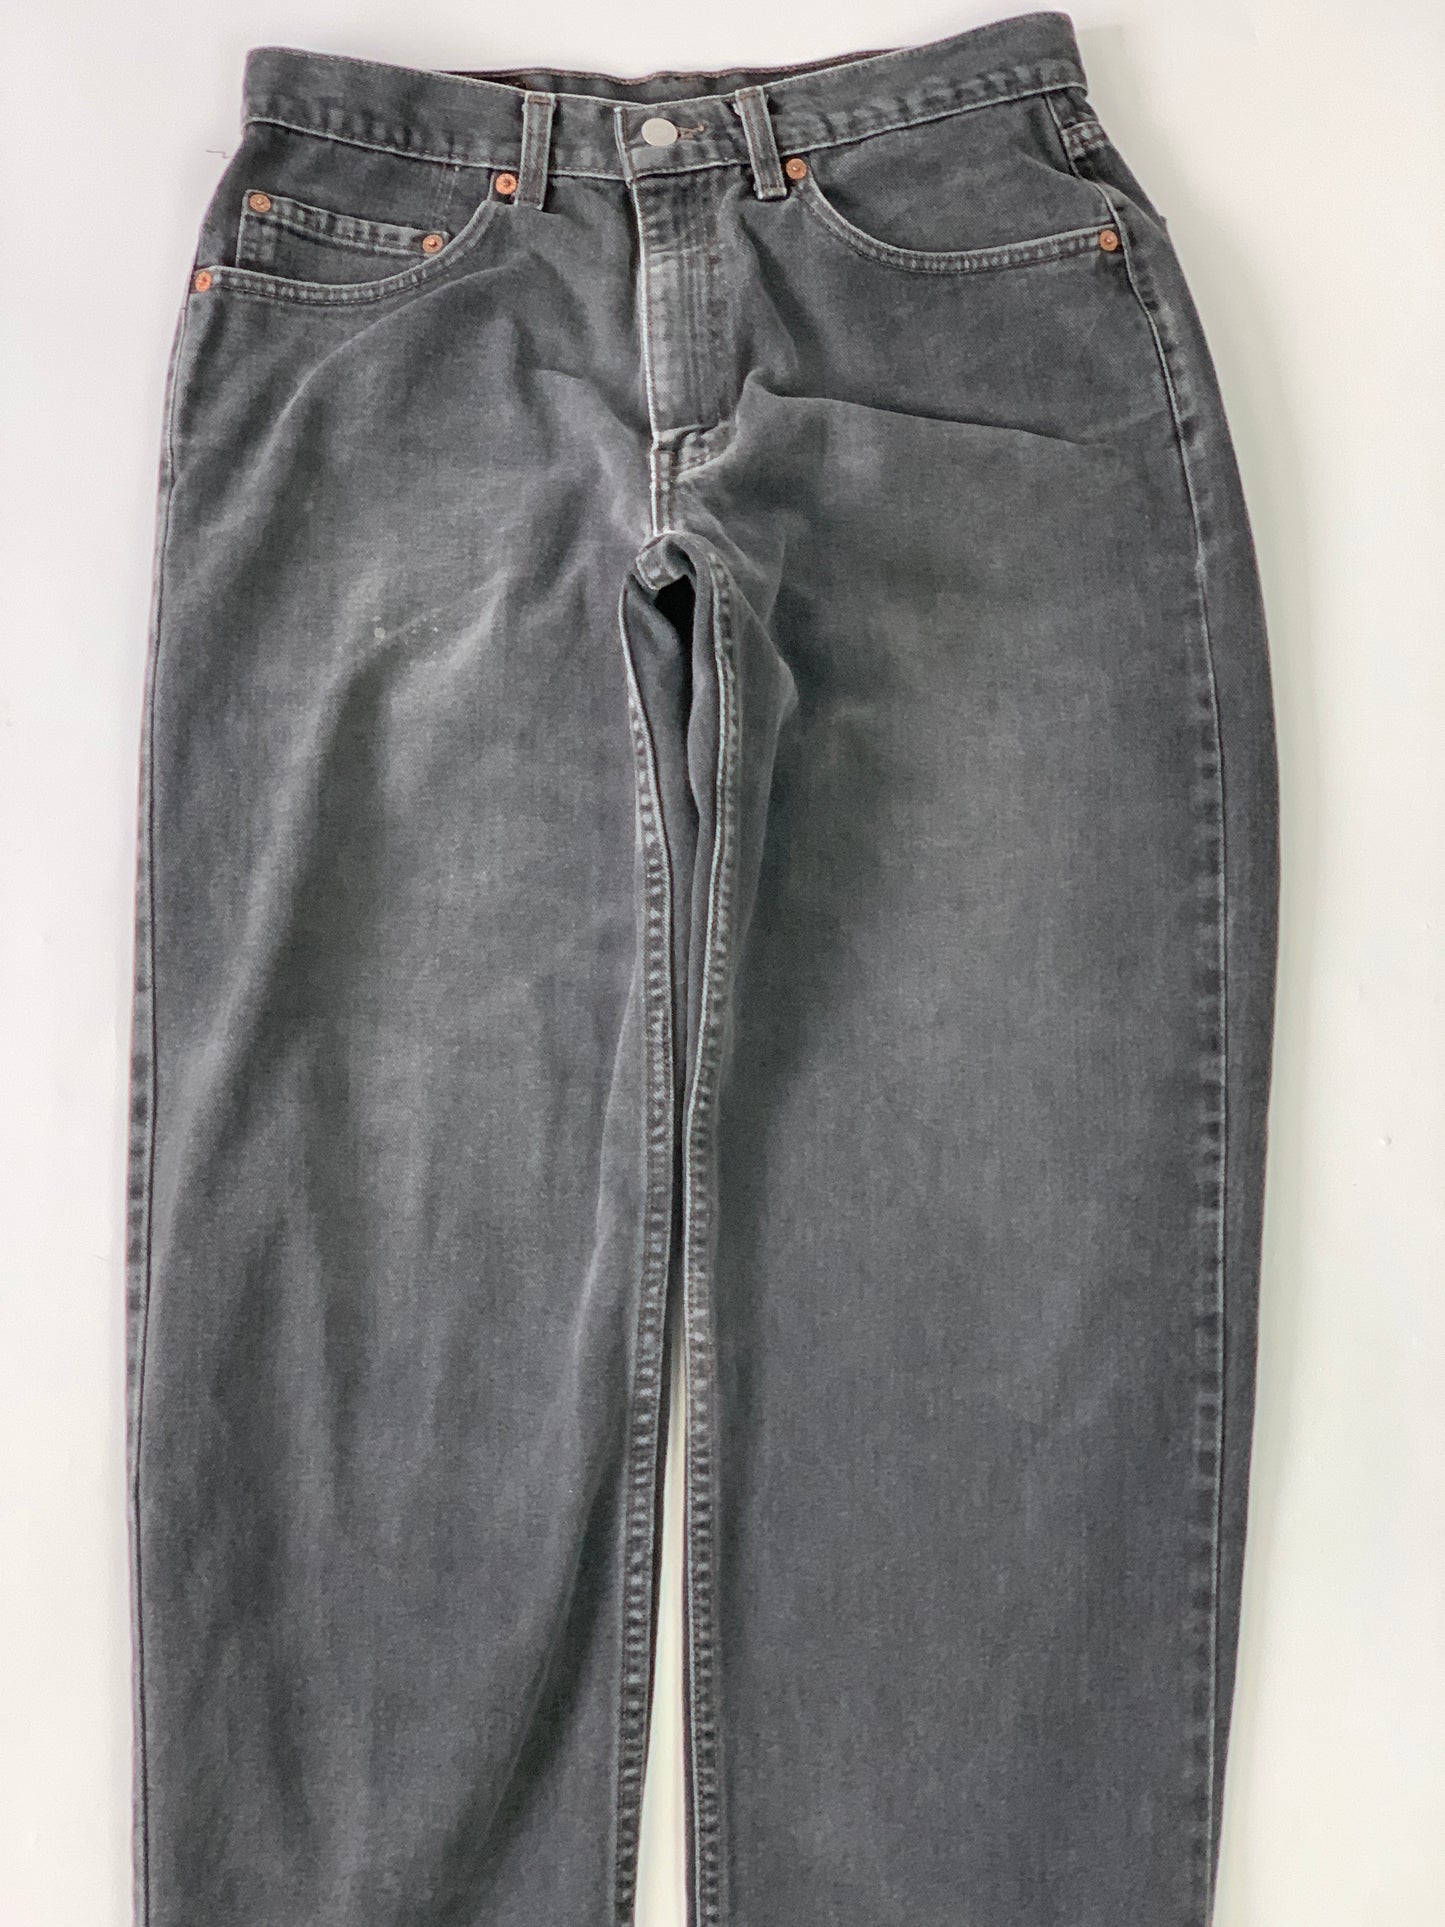 Levis Black 550 Vintage Jeans - 33 x 32